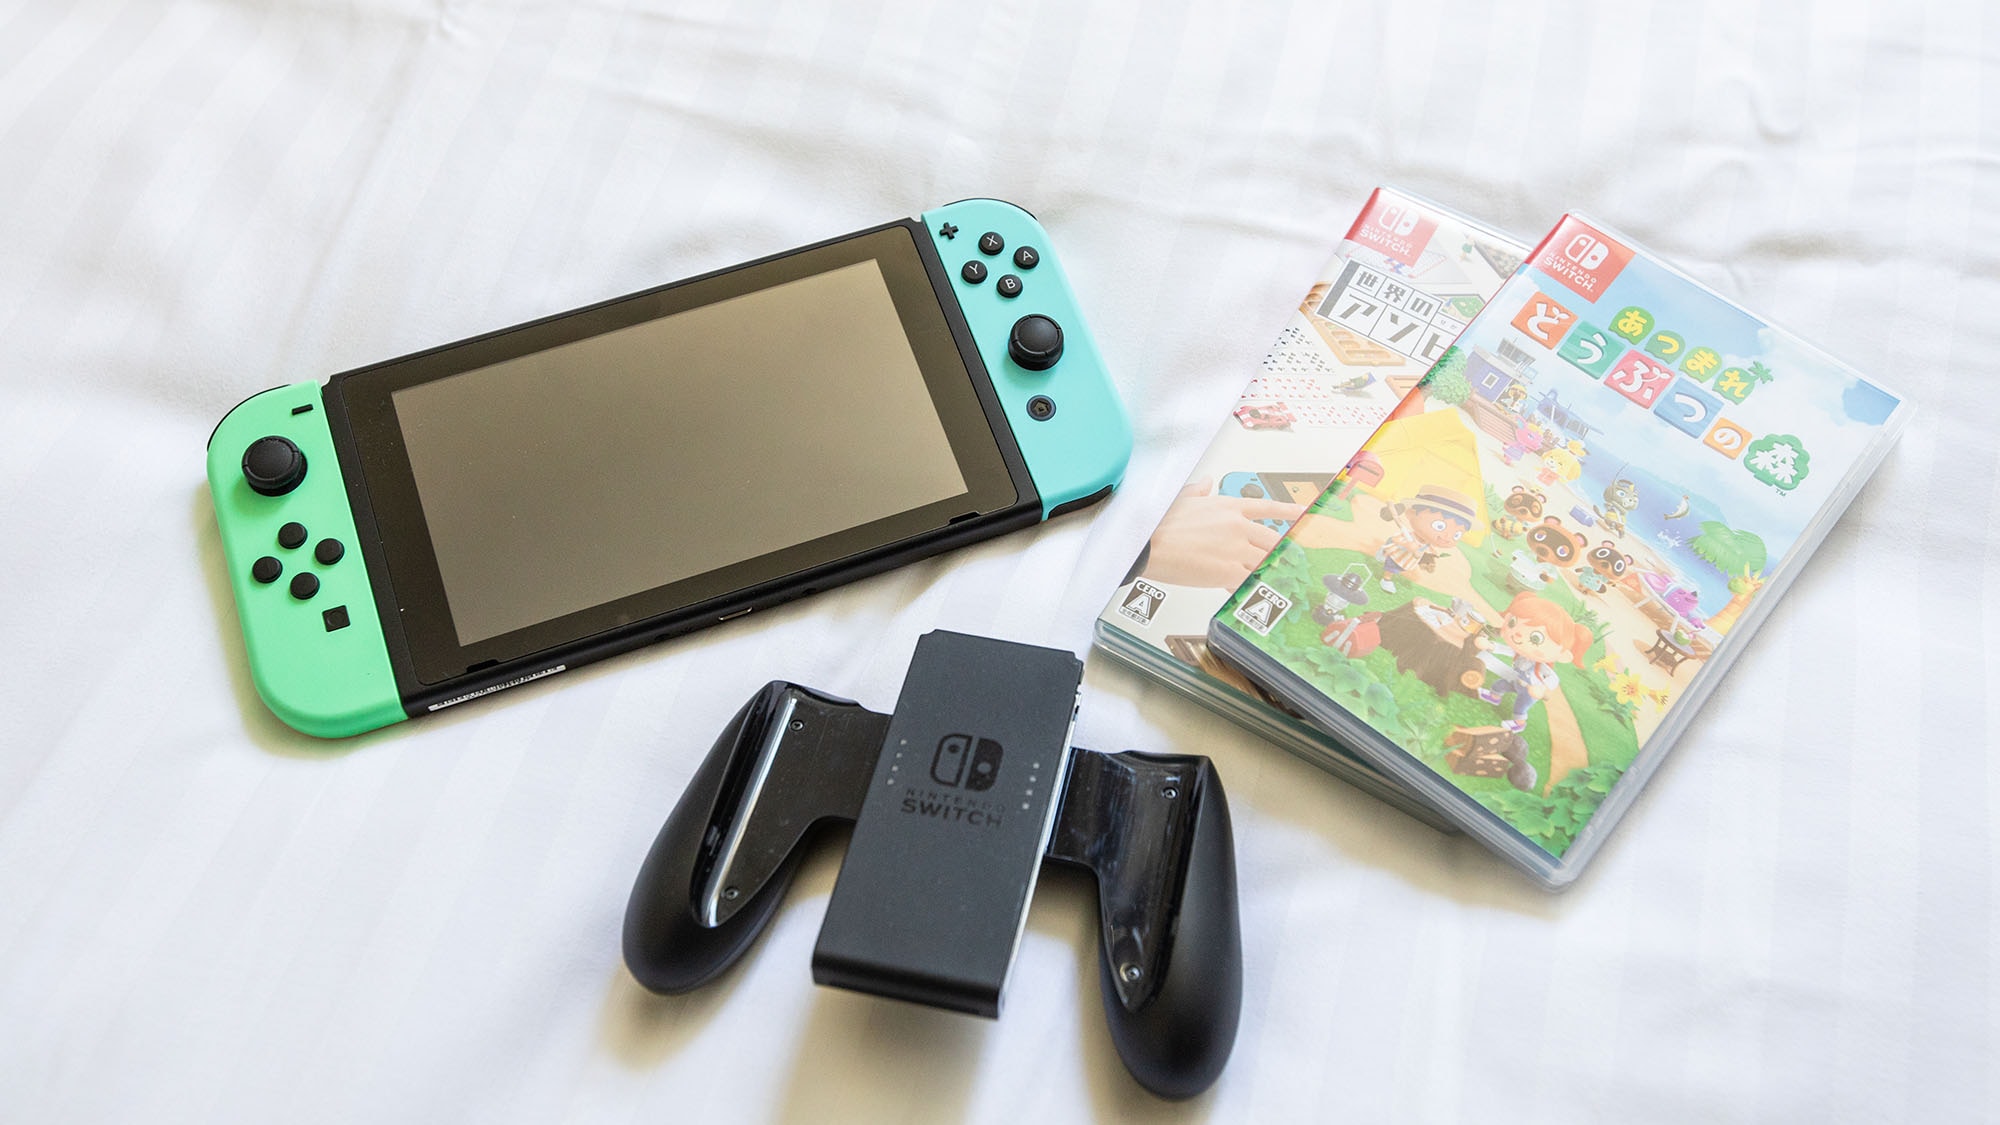 ・ [คู่กับ Nintendo Switch] แนะนำสำหรับการเข้าพักในวันที่อากาศไม่ดี! เล่นระหว่างเข้าพัก